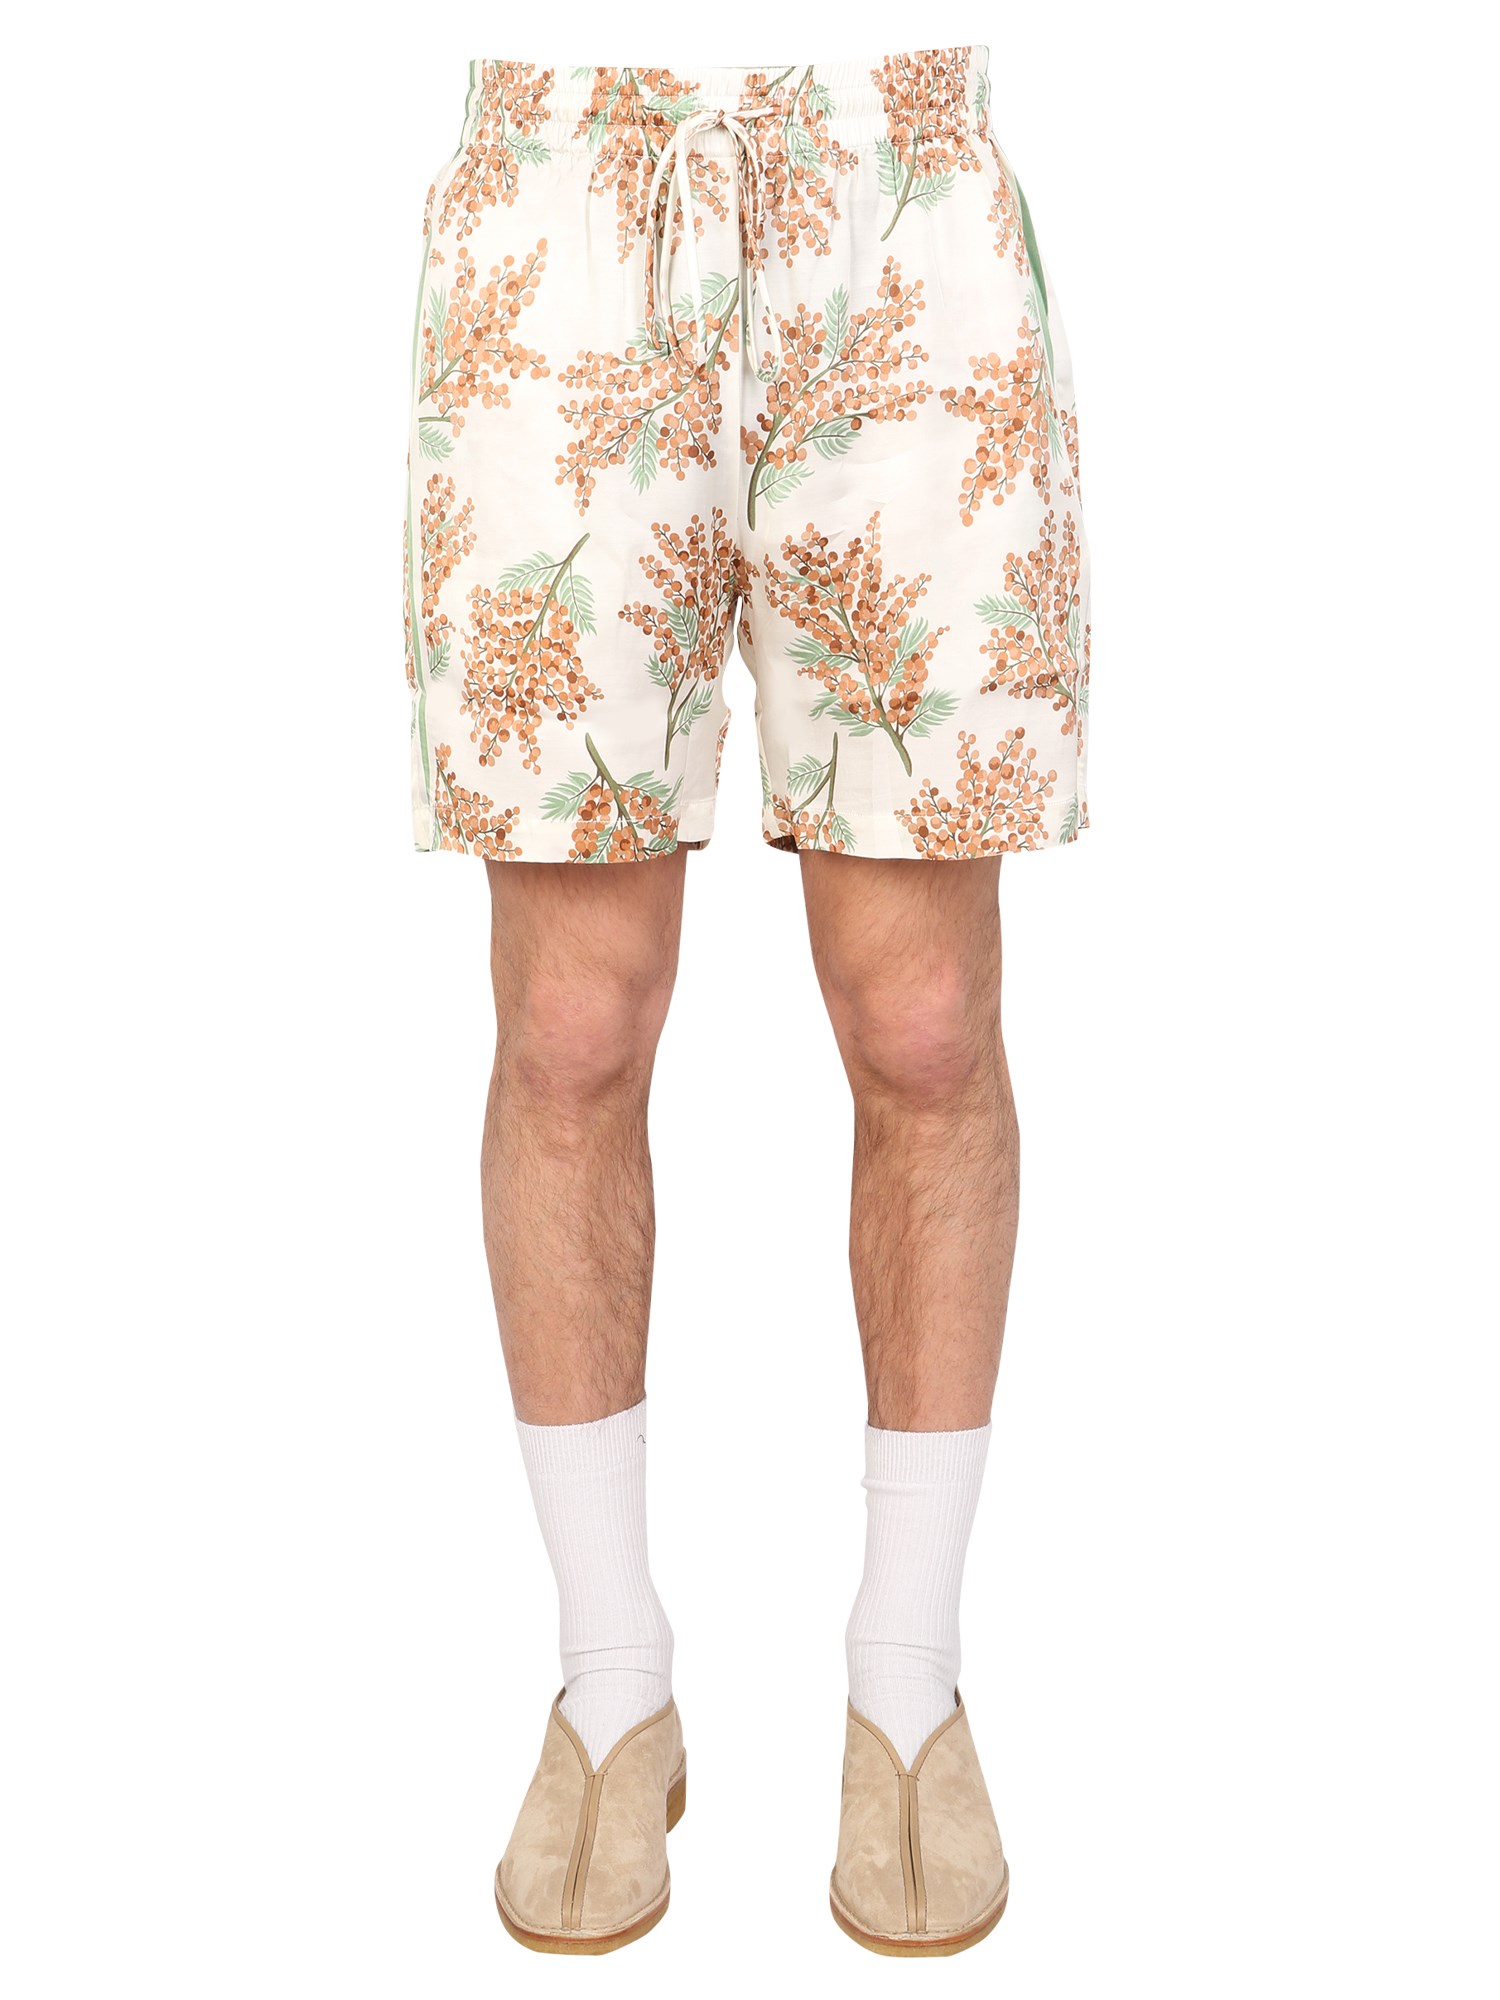 mouty mouty bermuda floral print shorts